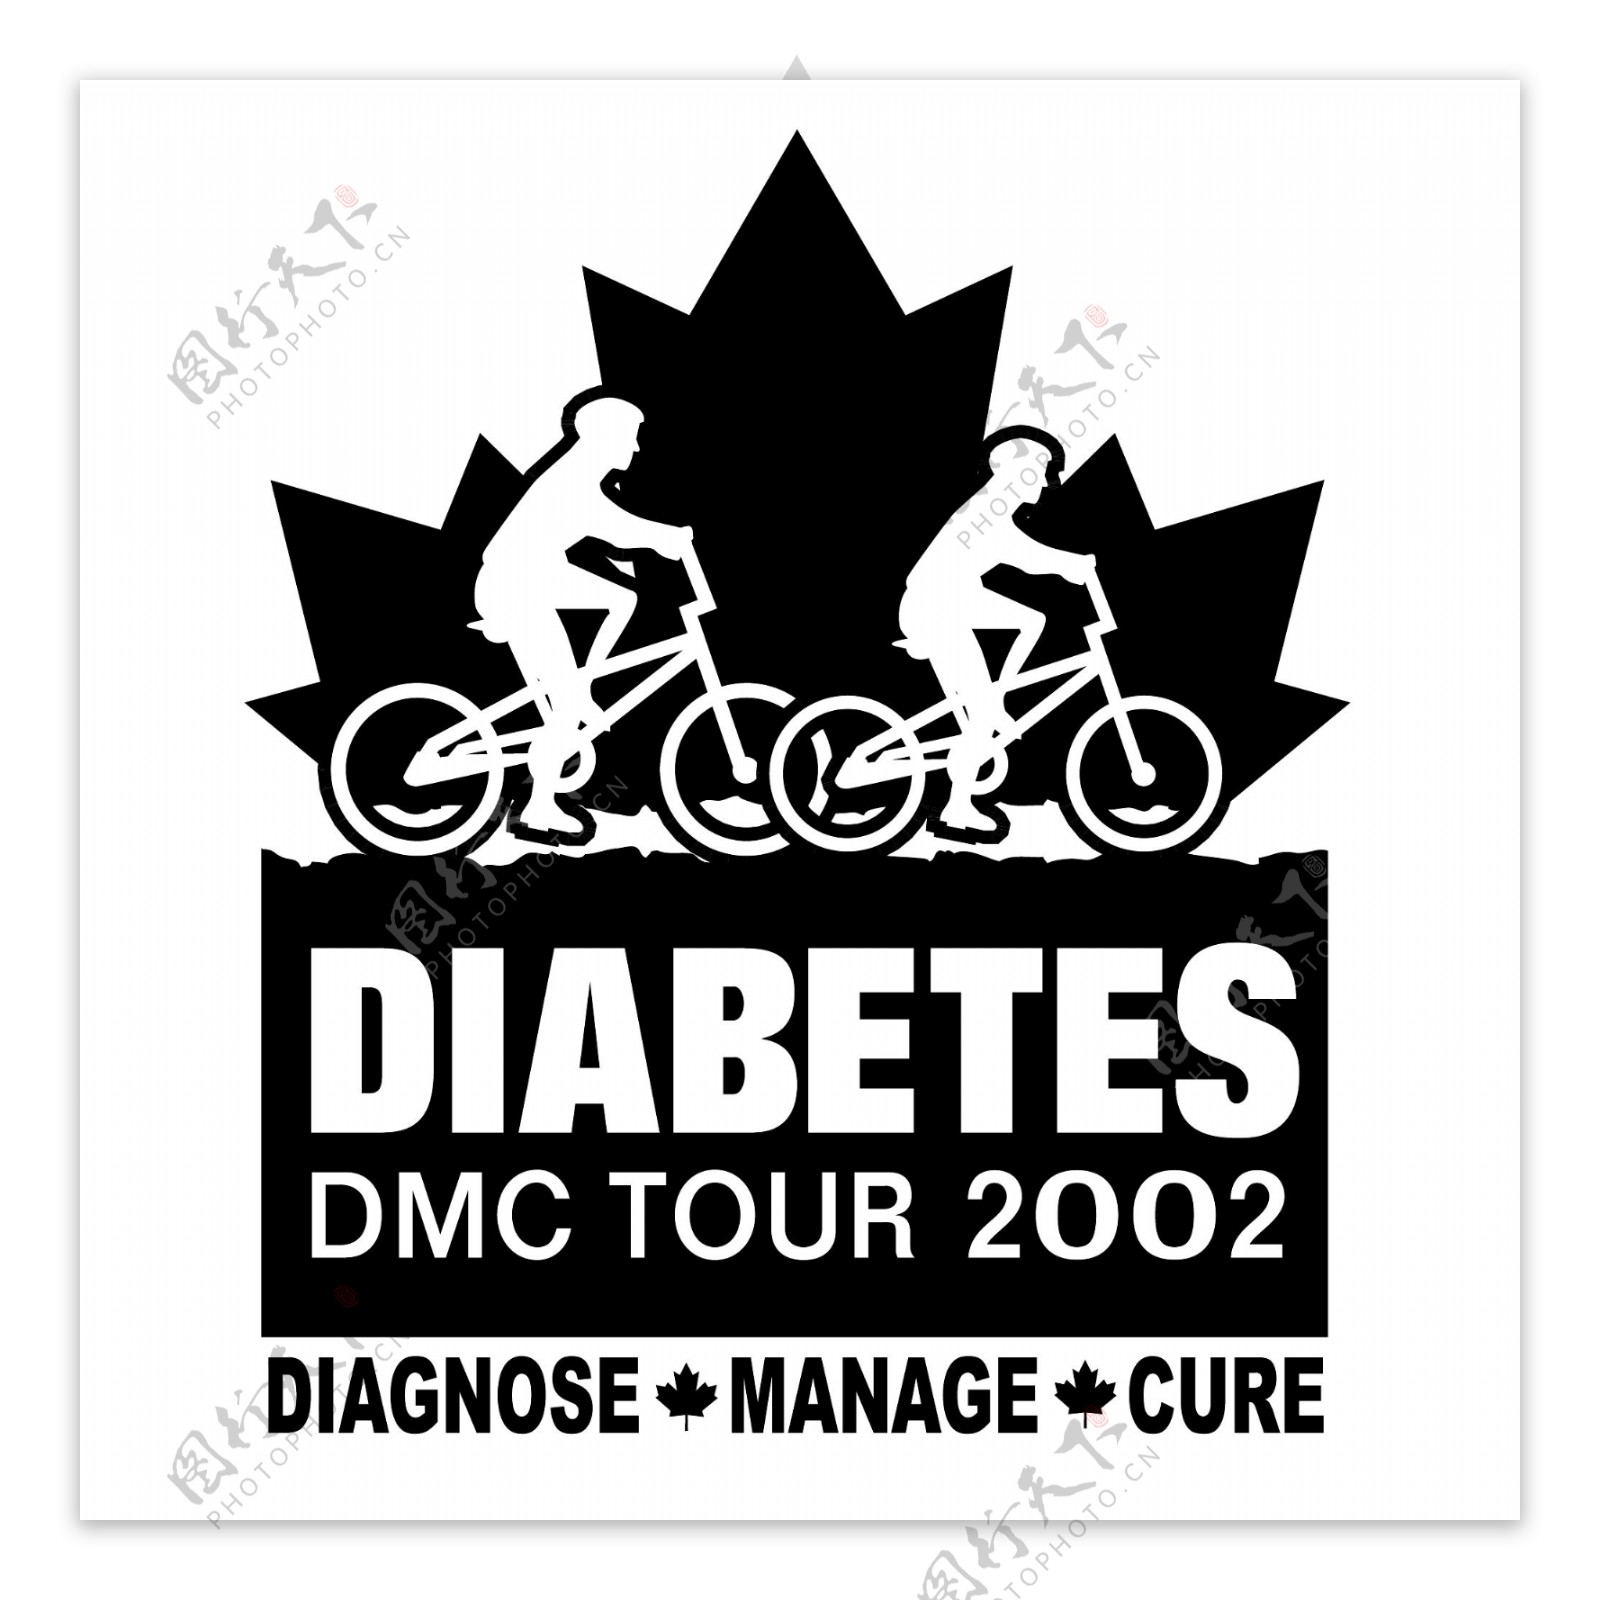 糖尿病DMC巡回赛0